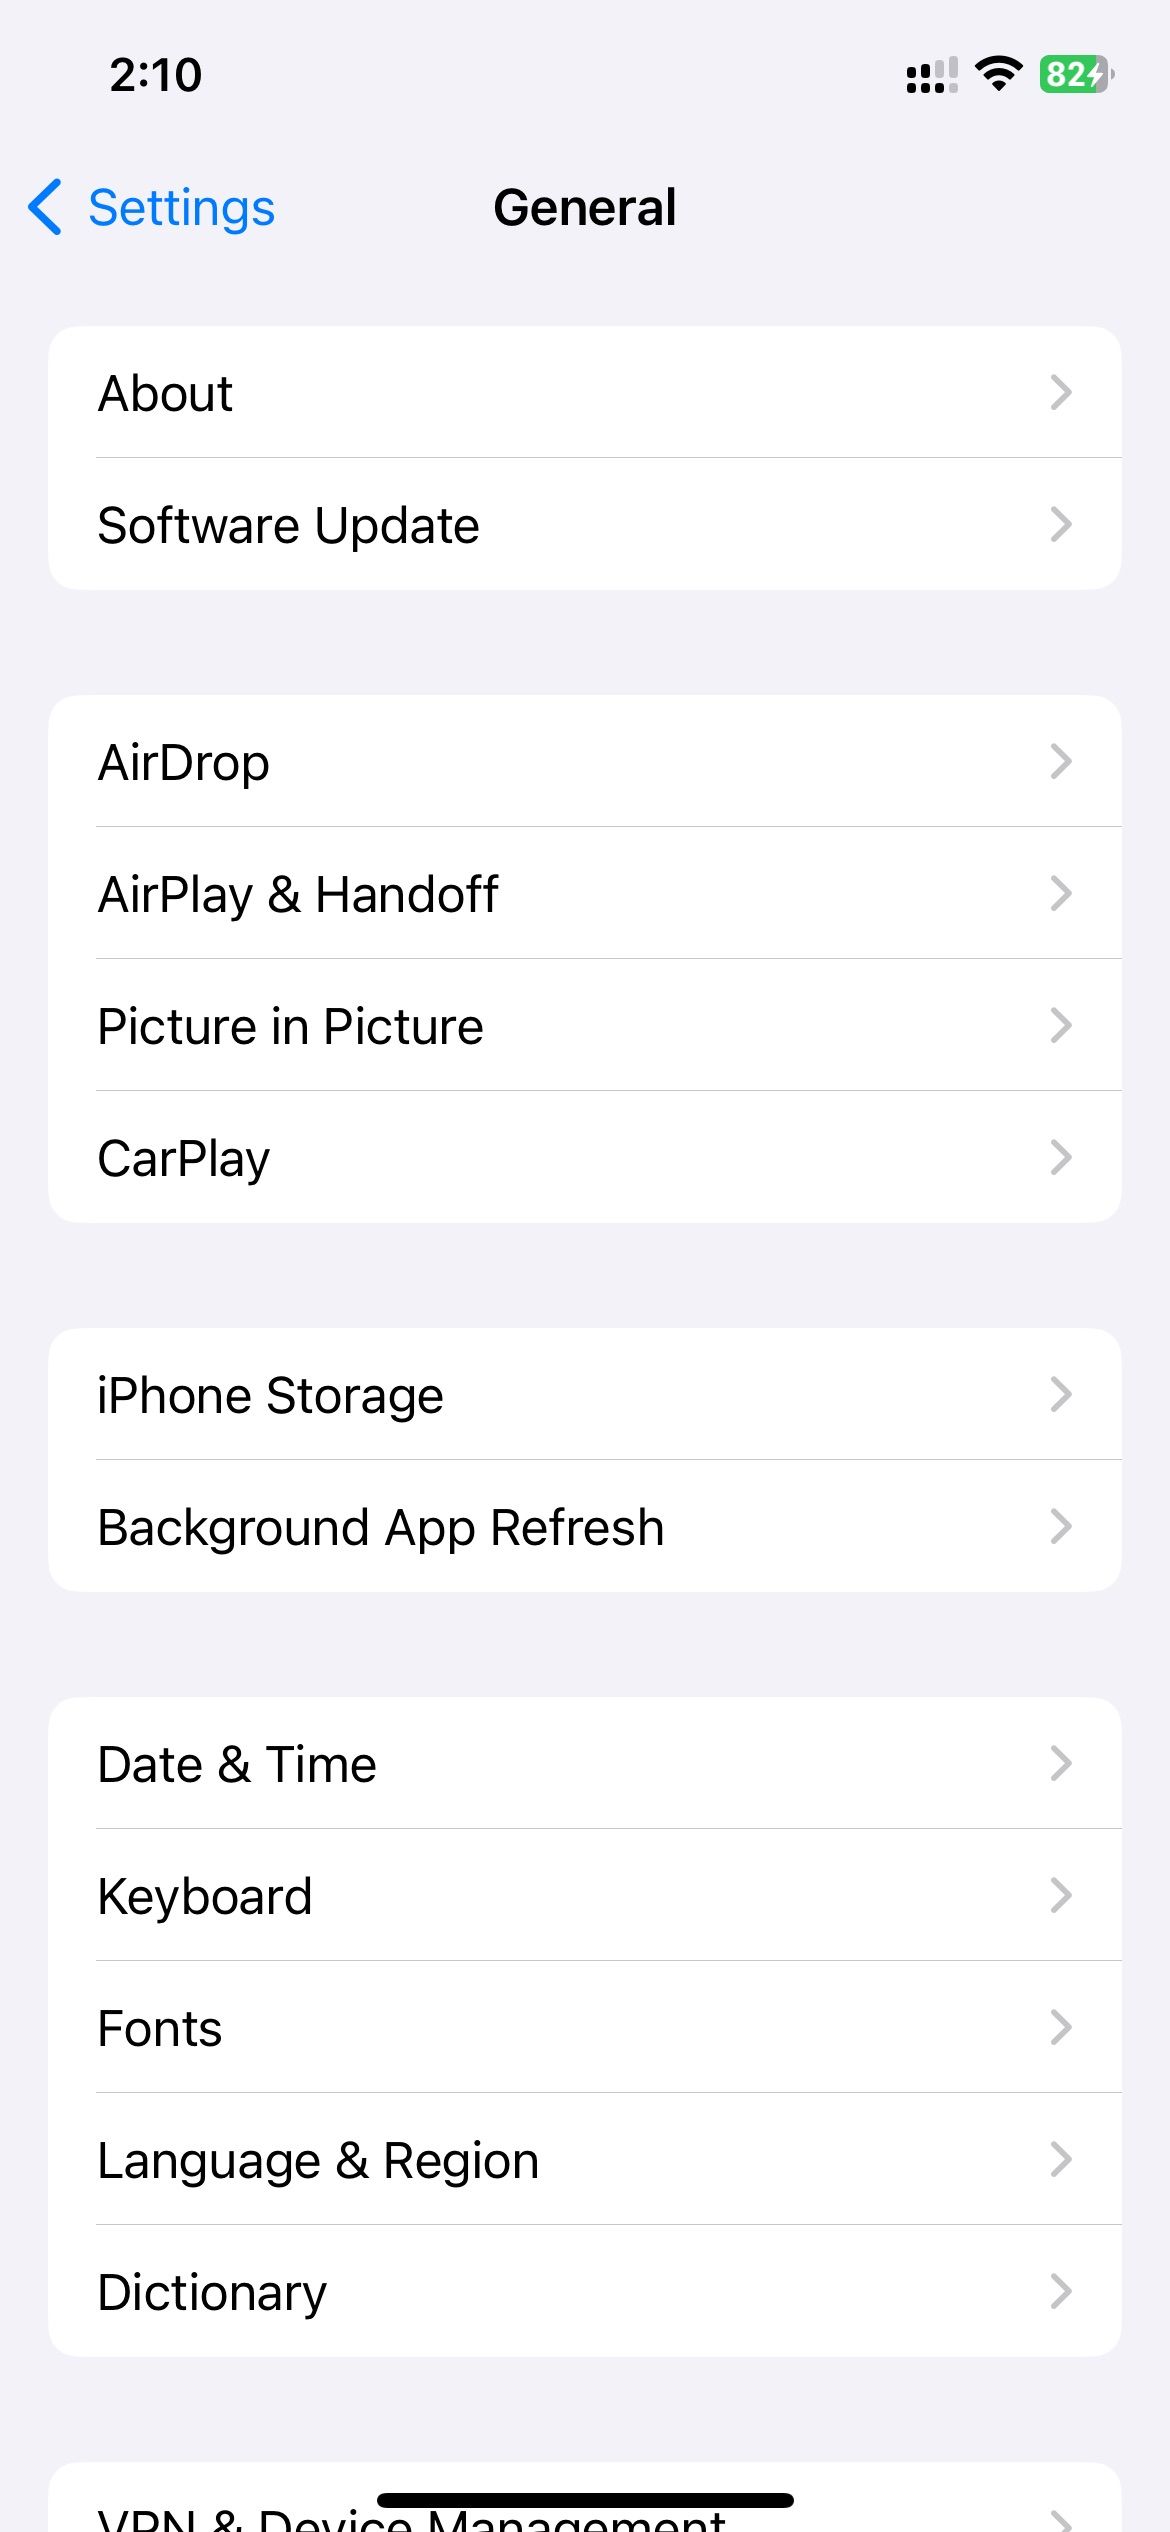 General settings in iOS